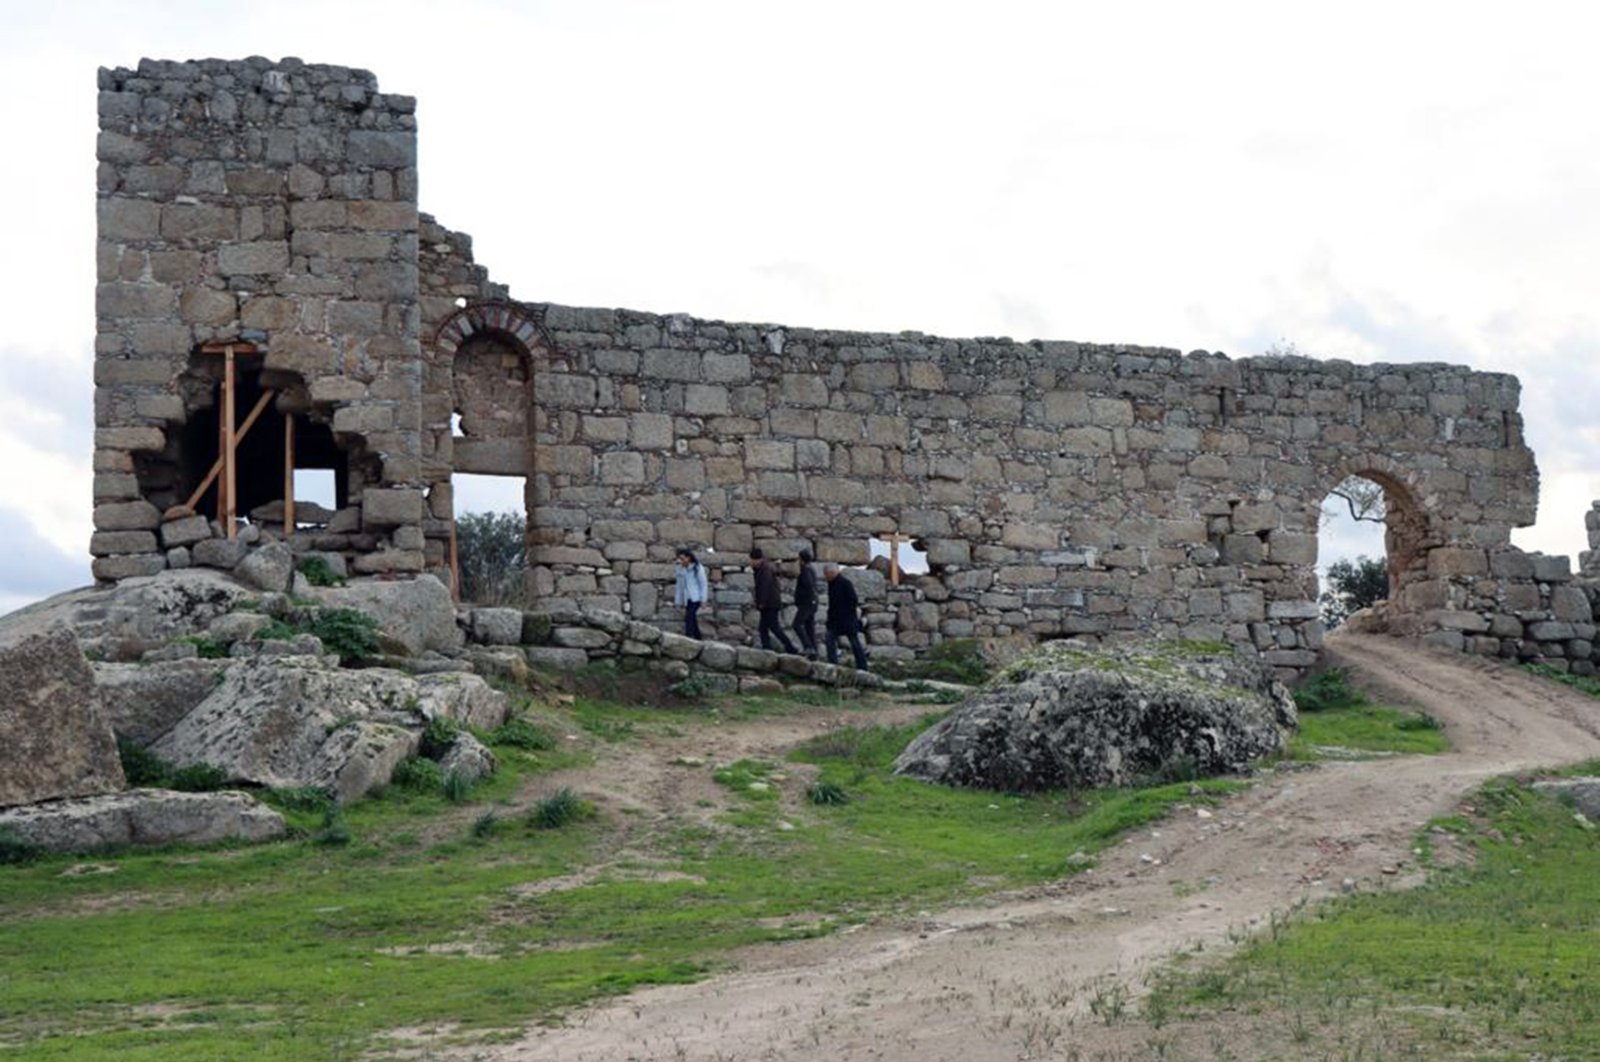 Penggalian, restorasi menggali aset budaya di Heraclea kuno